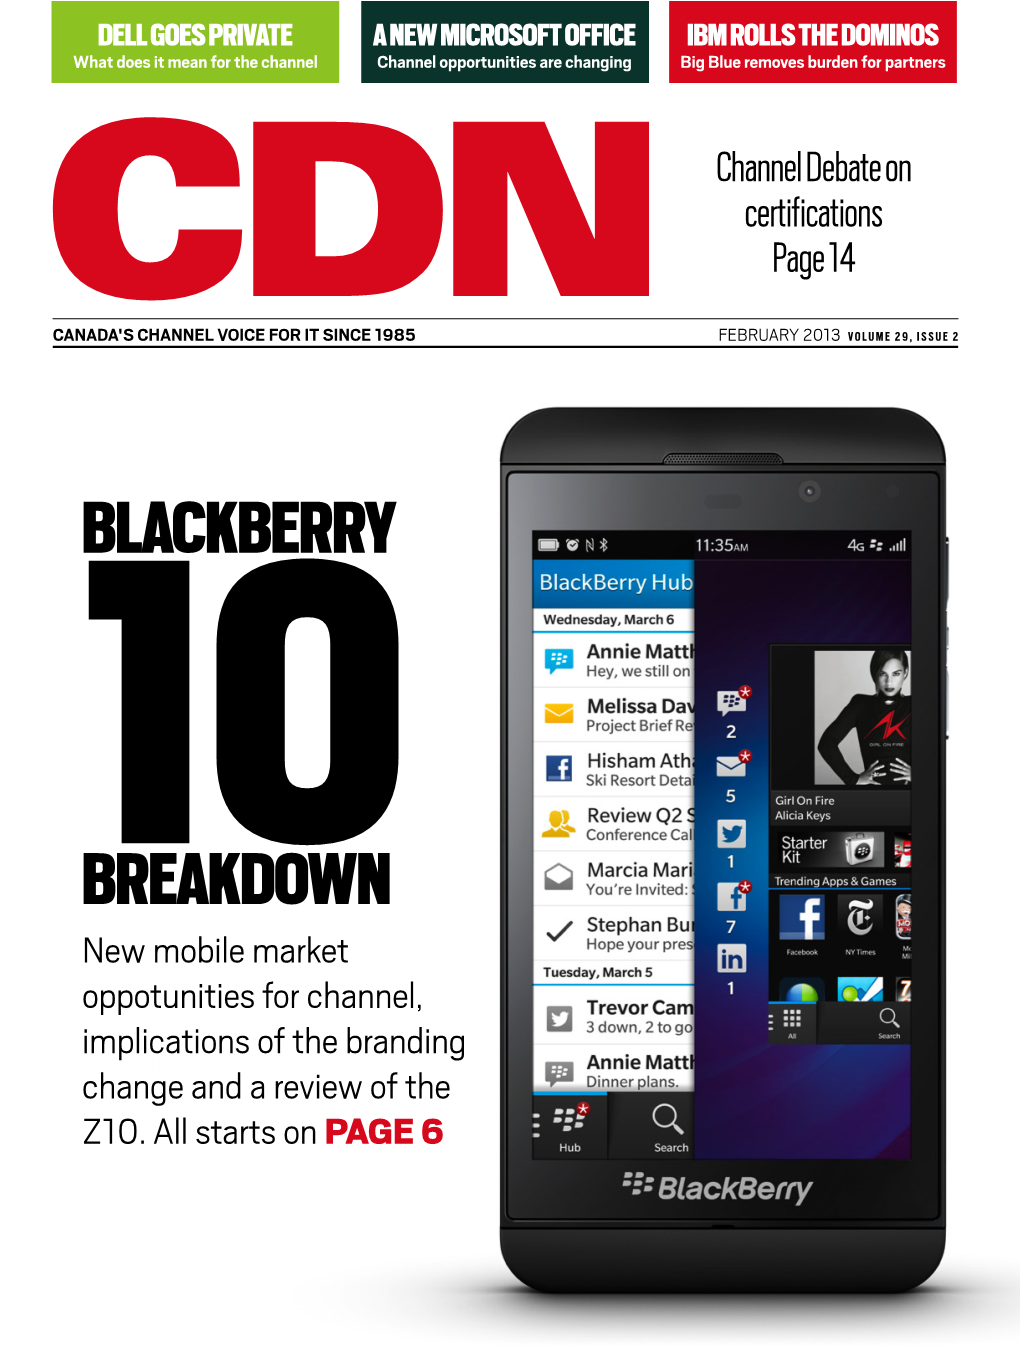 Blackberry 10Breakdown